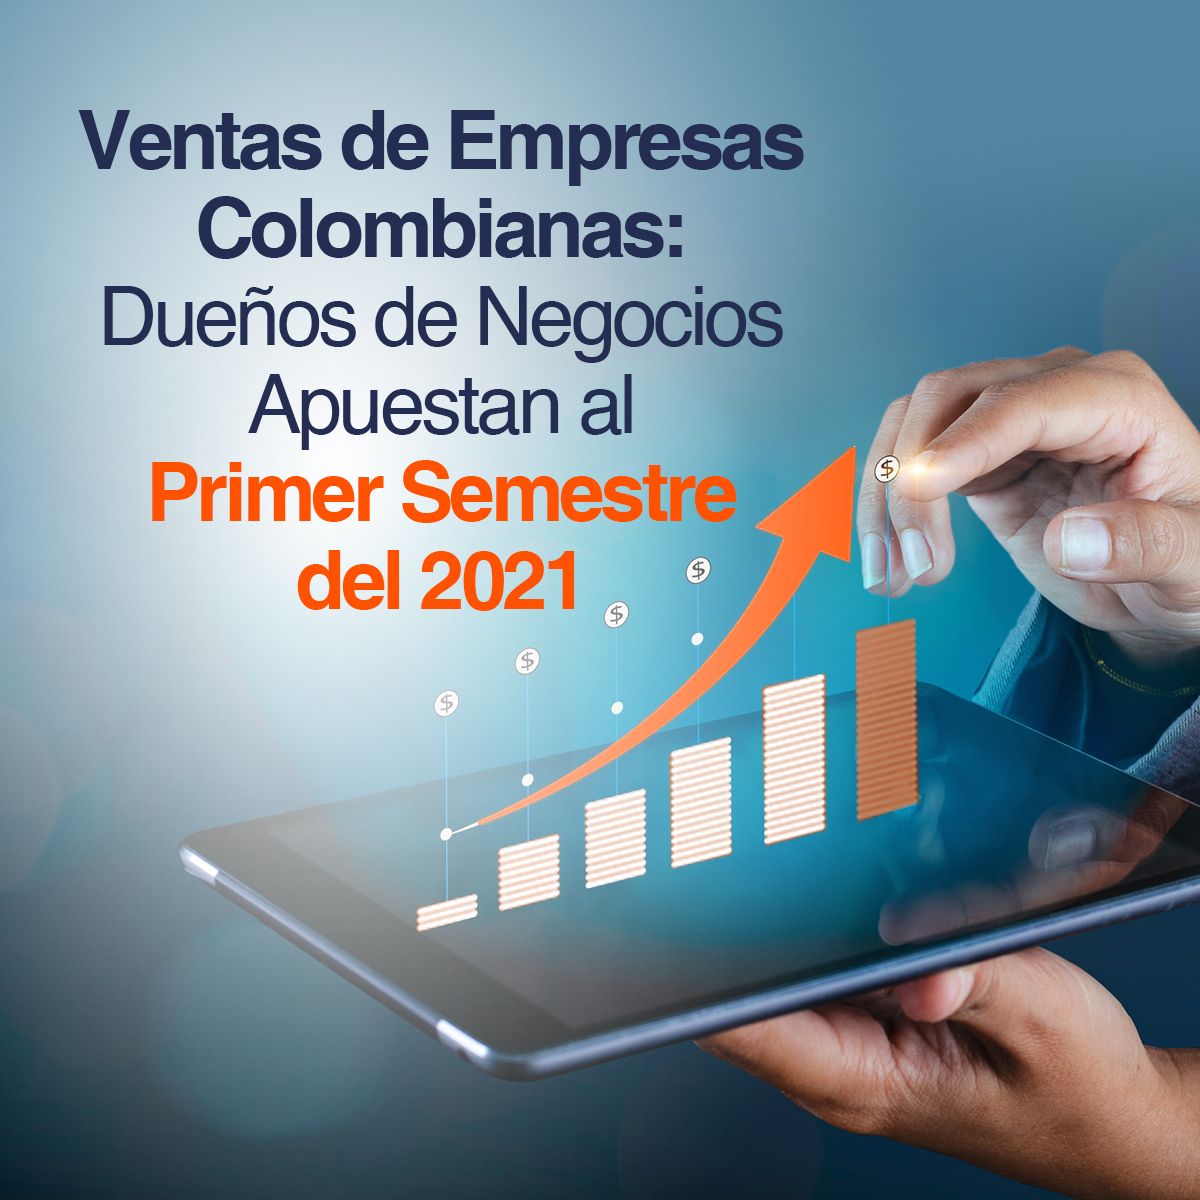 Ventas de Empresas Colombianas: Dueños de Negocios Apuestan al Primer Semestre del 2021